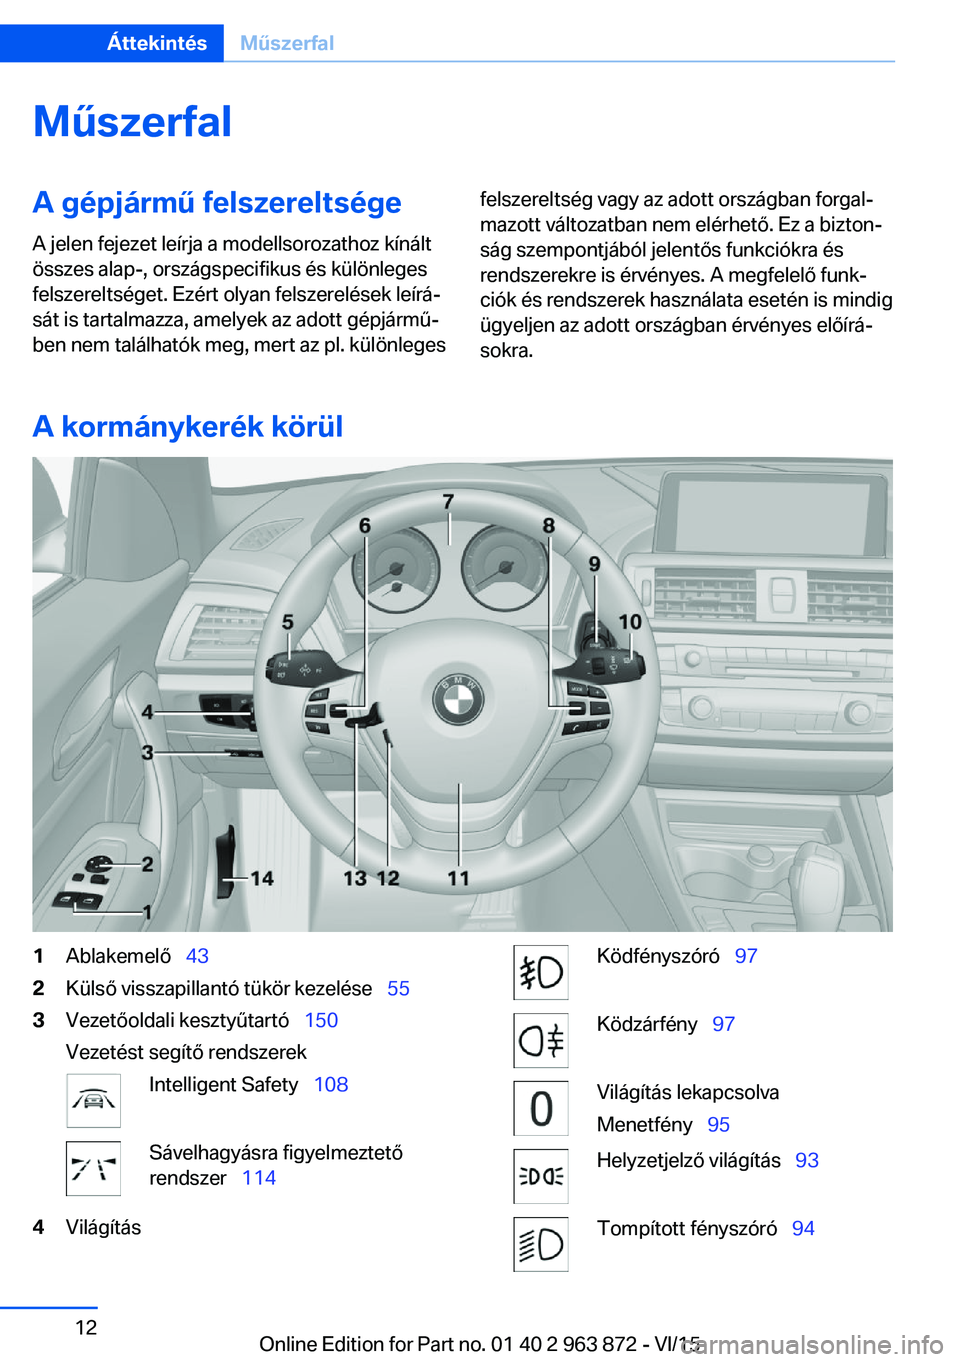 BMW 2 SERIES COUPE 2016  Kezelési útmutató (in Hungarian) MűszerfalA gépjármű felszereltsége
A jelen fejezet leírja a modellsorozathoz kínált
összes alap-, országspecifikus és különleges
felszereltséget. Ezért olyan felszerelések leírá‐
s